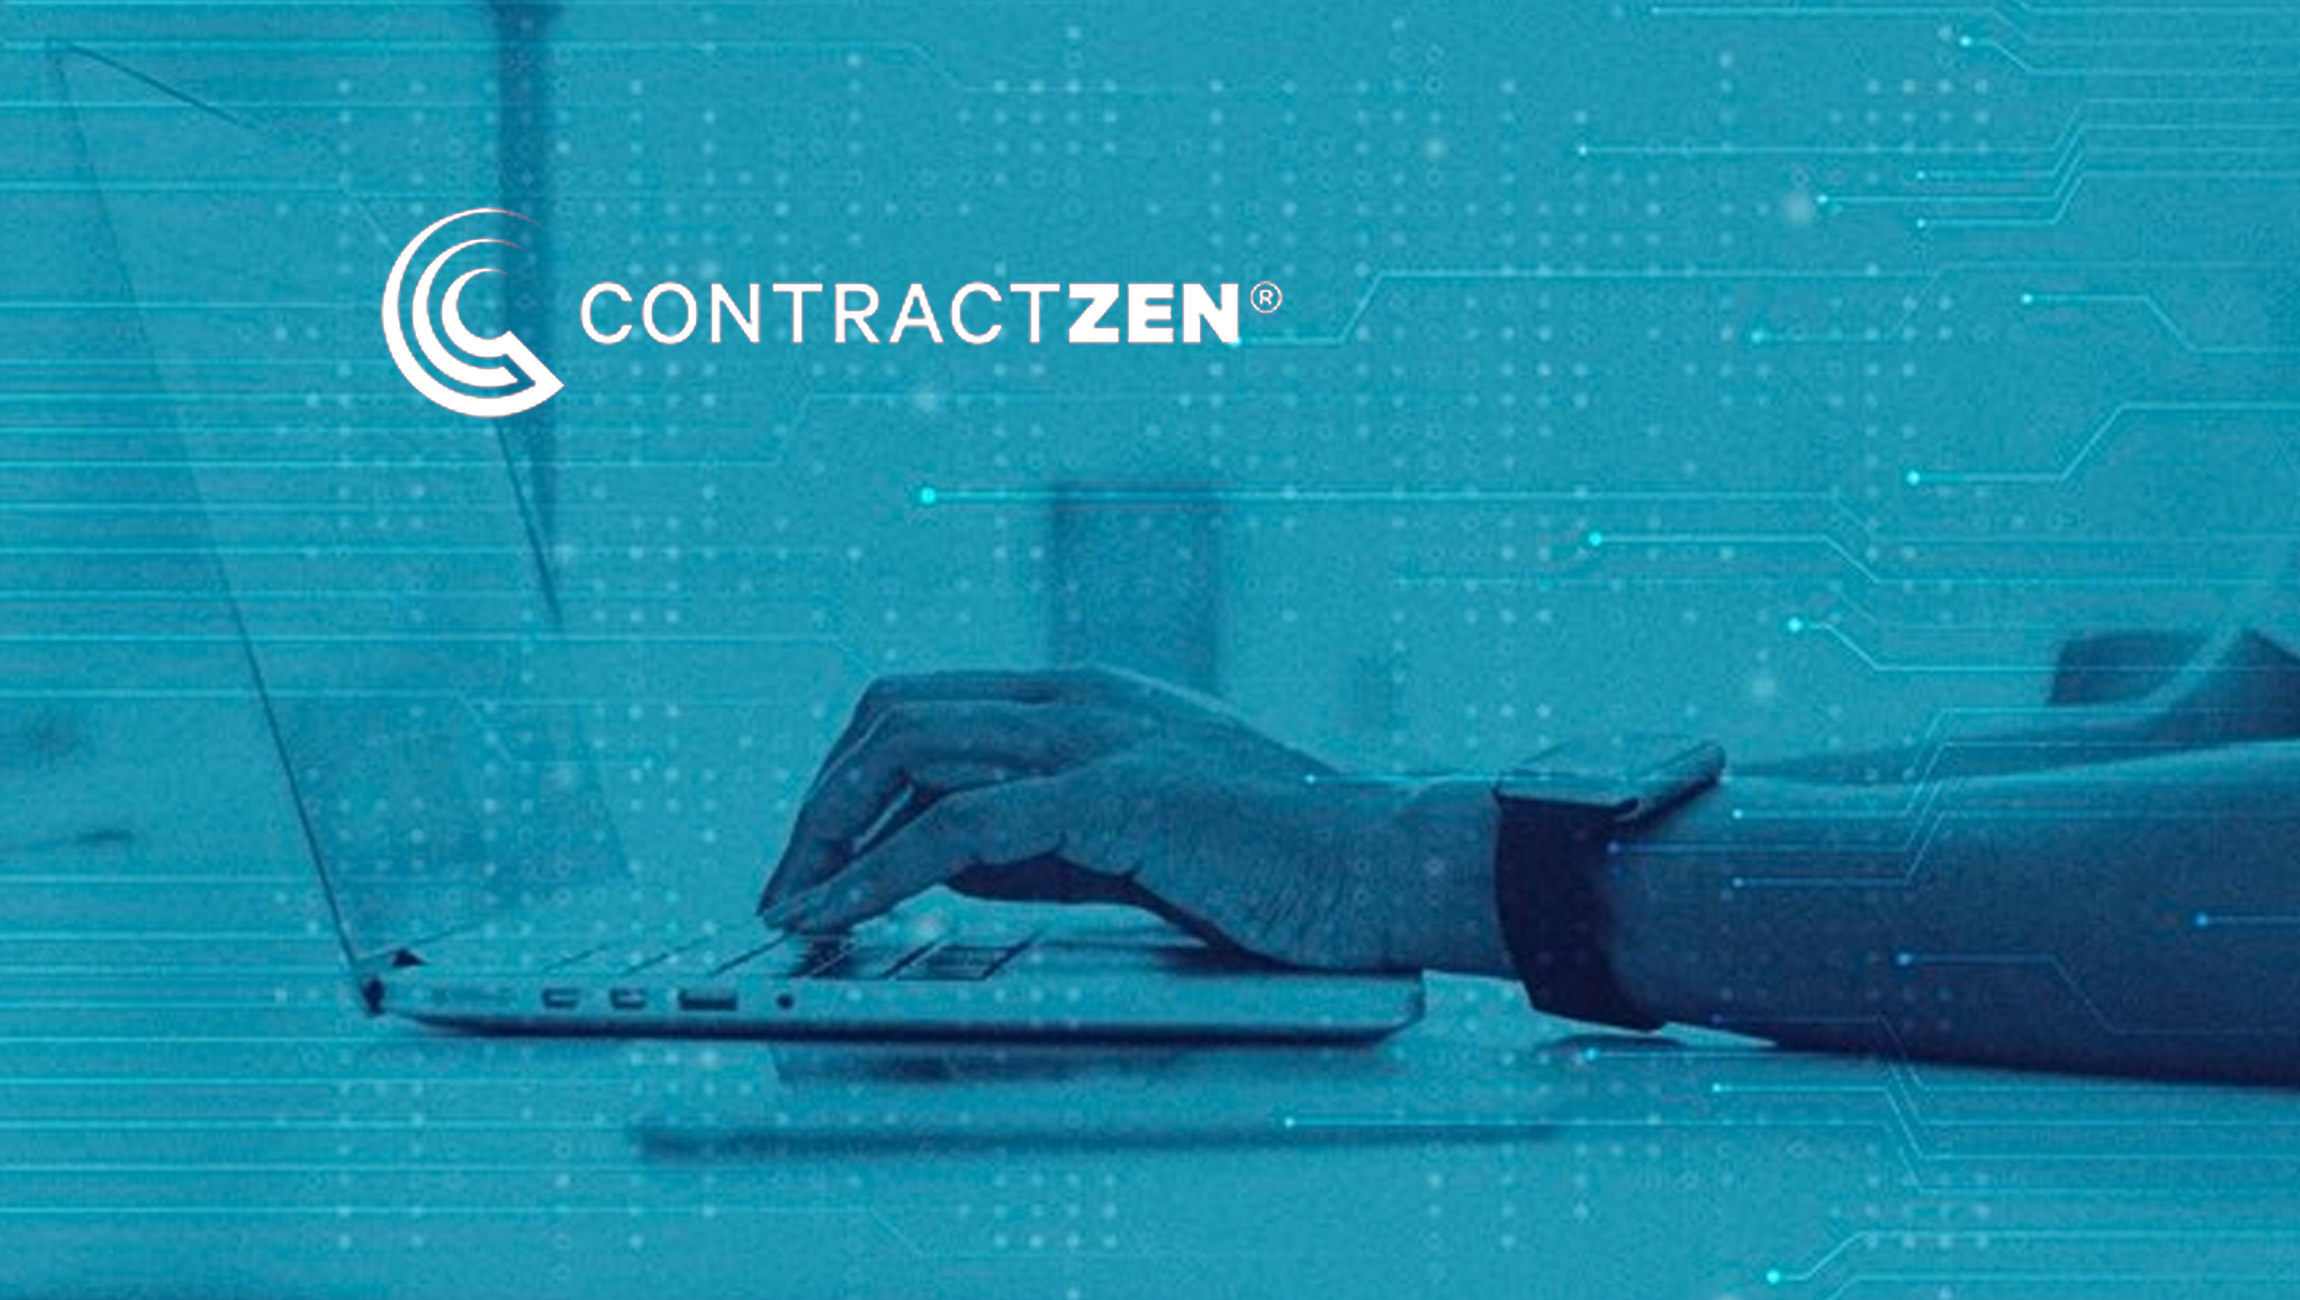 Governance Software Company ContractZen Joins PartnerStack SaaS Ecosystem